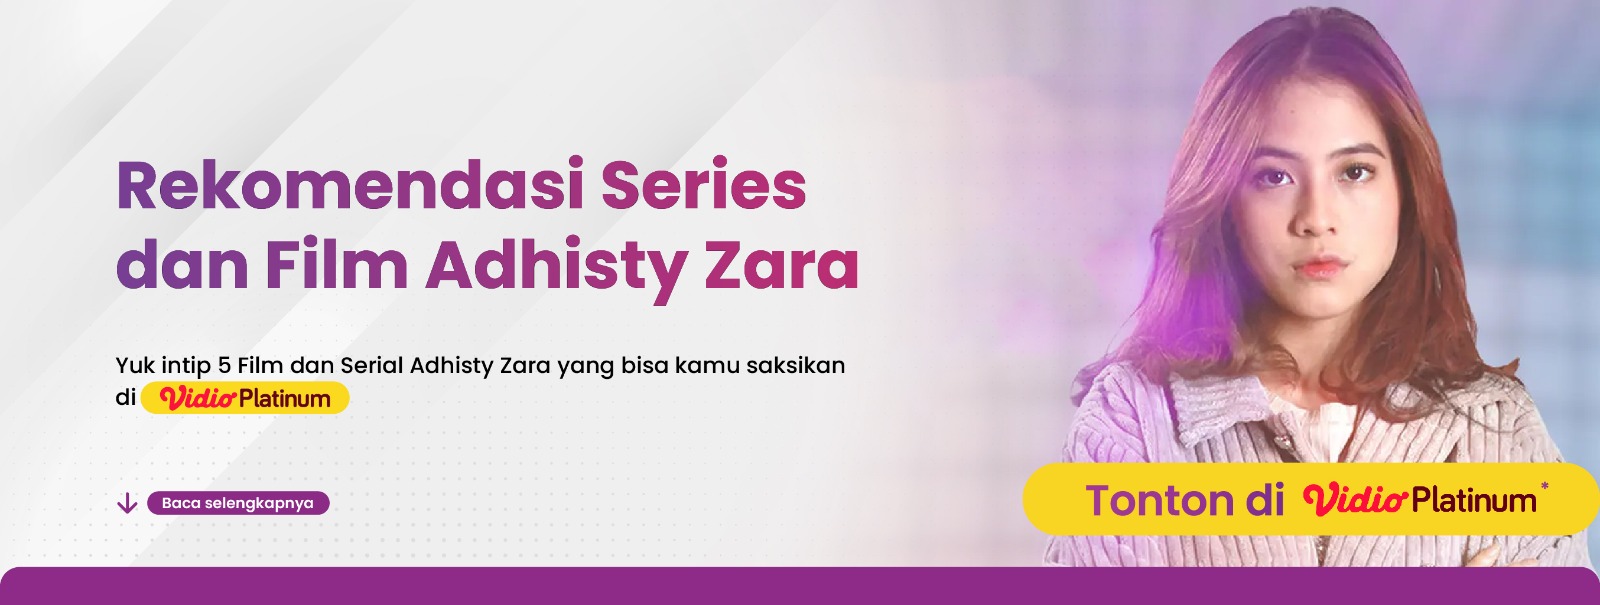 Rekomendasi Series dan Film Adhisty Zara